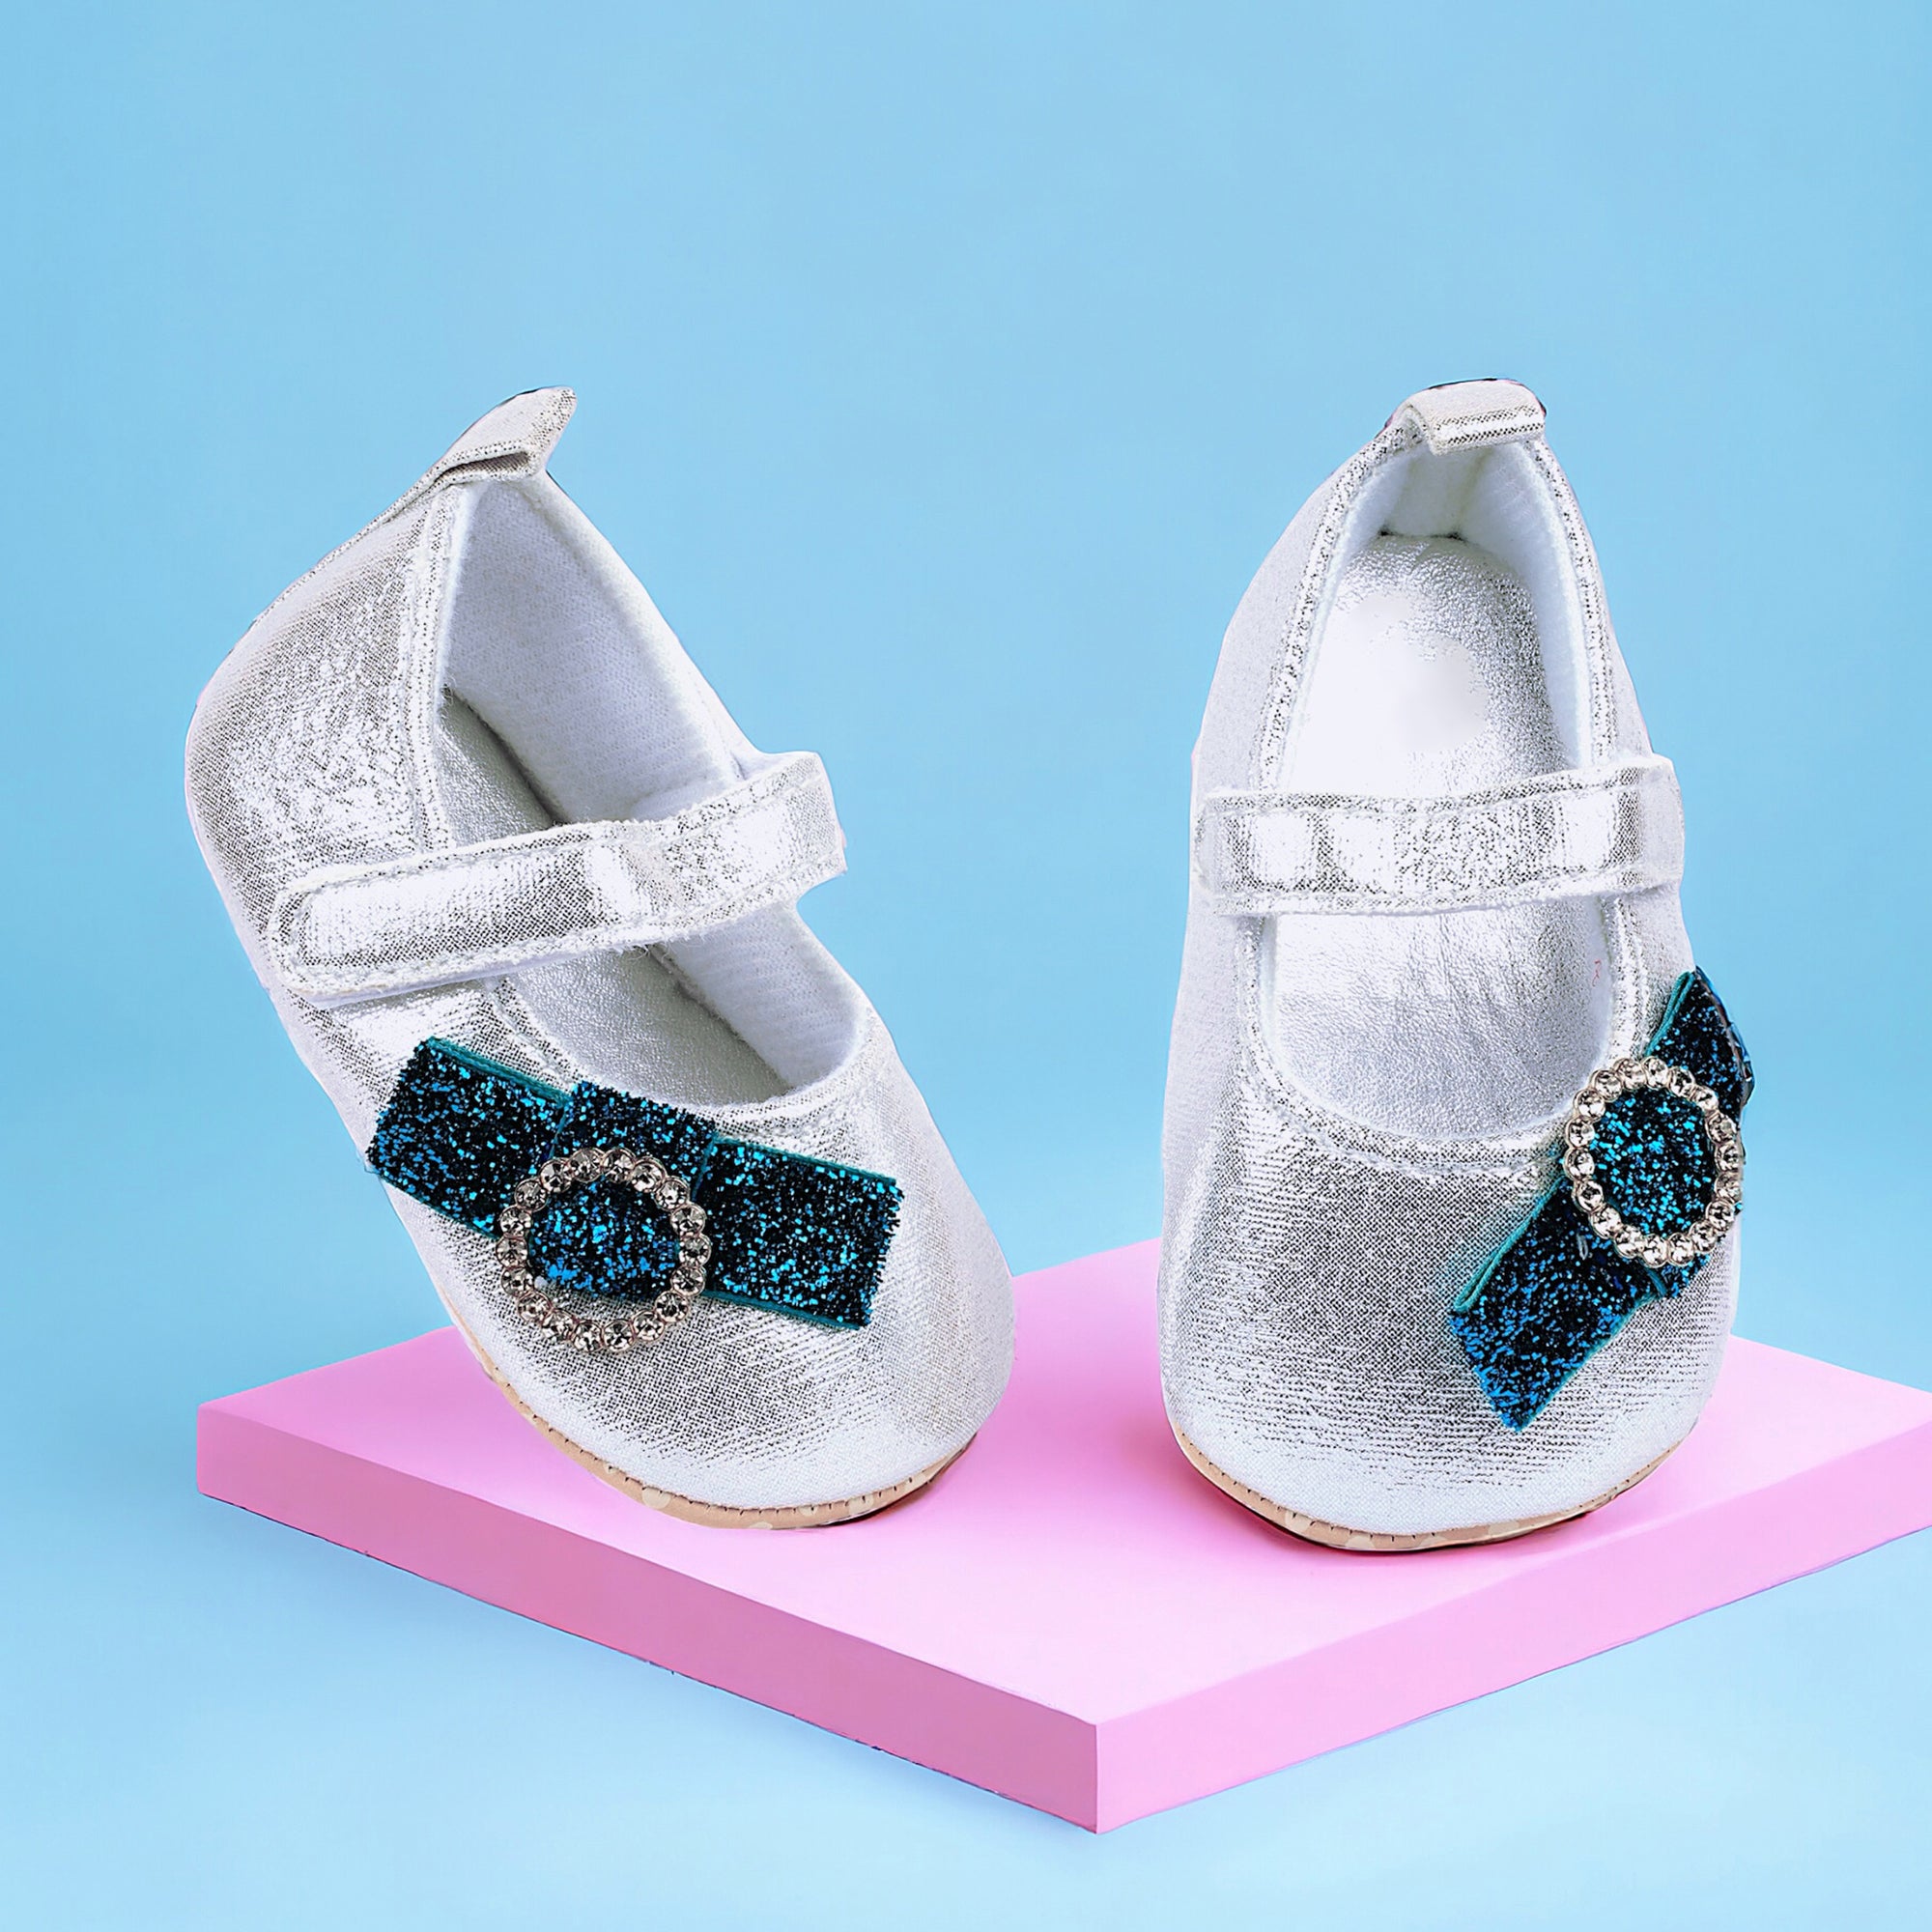 Baby Moo Shining Partywear Bow Applique Velcro Strap Ballerina Booties - Silver